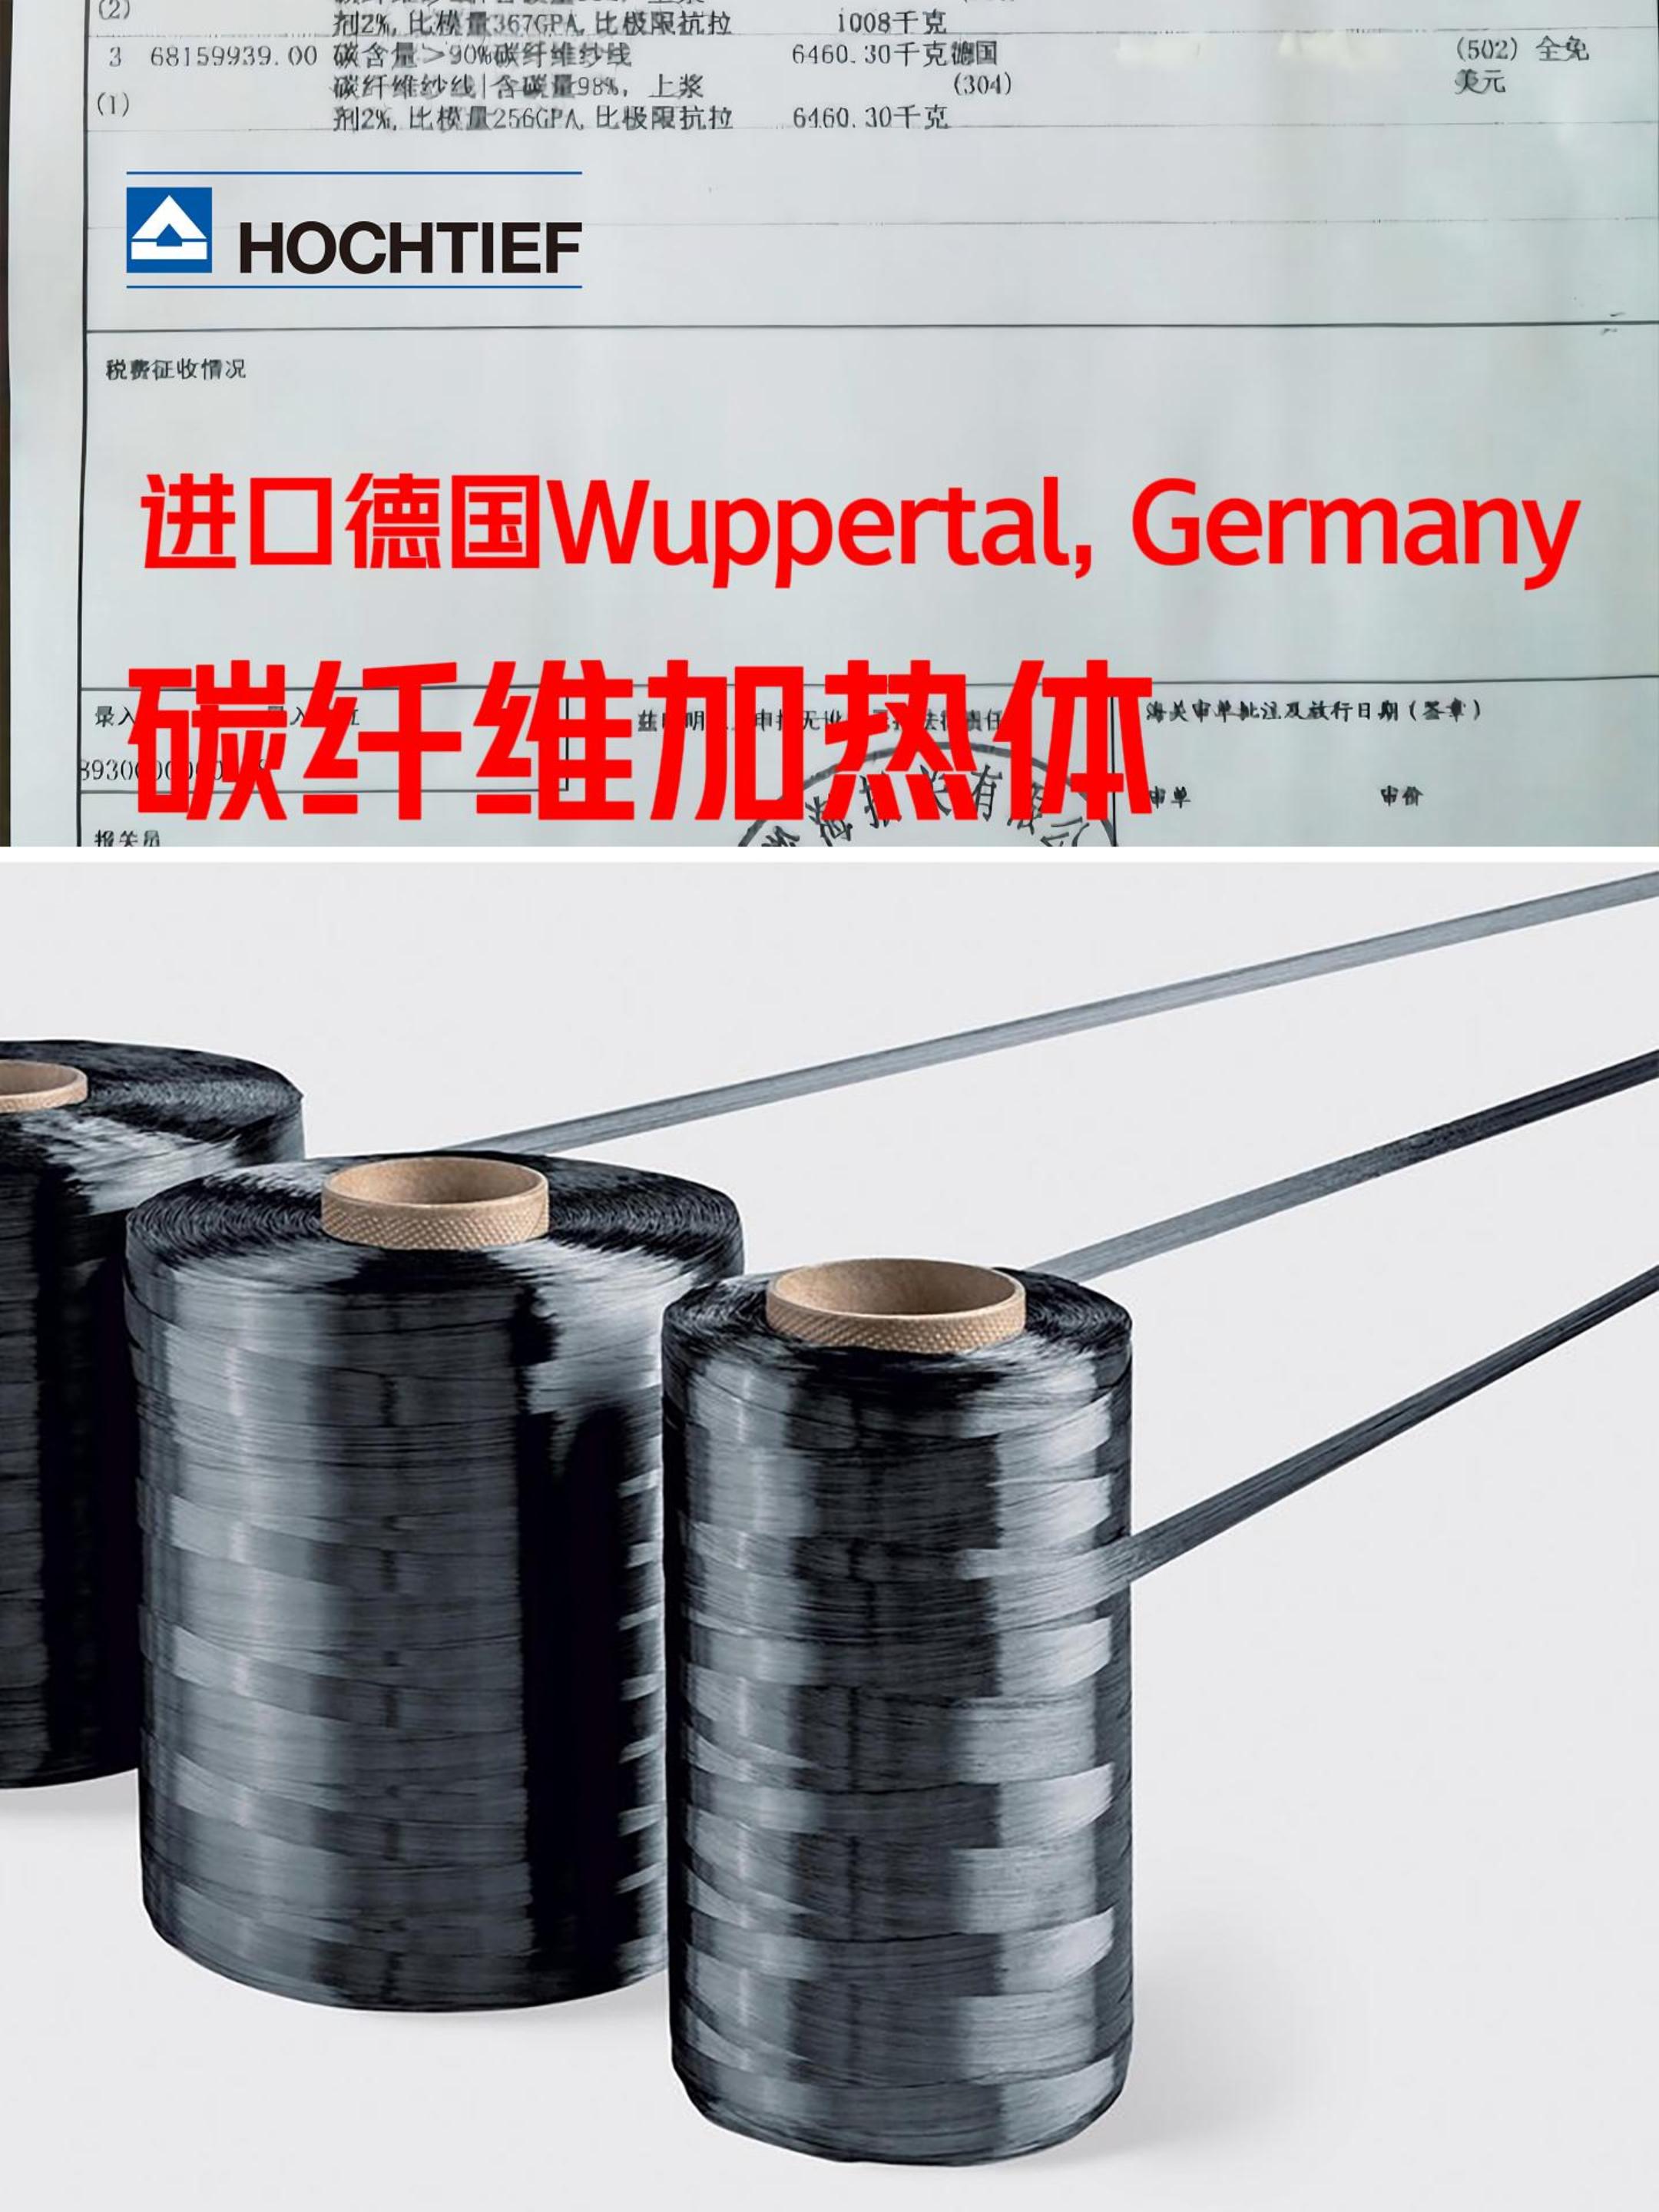 豪赫蒂夫电地暖德国进口远红外热应用碳纤维